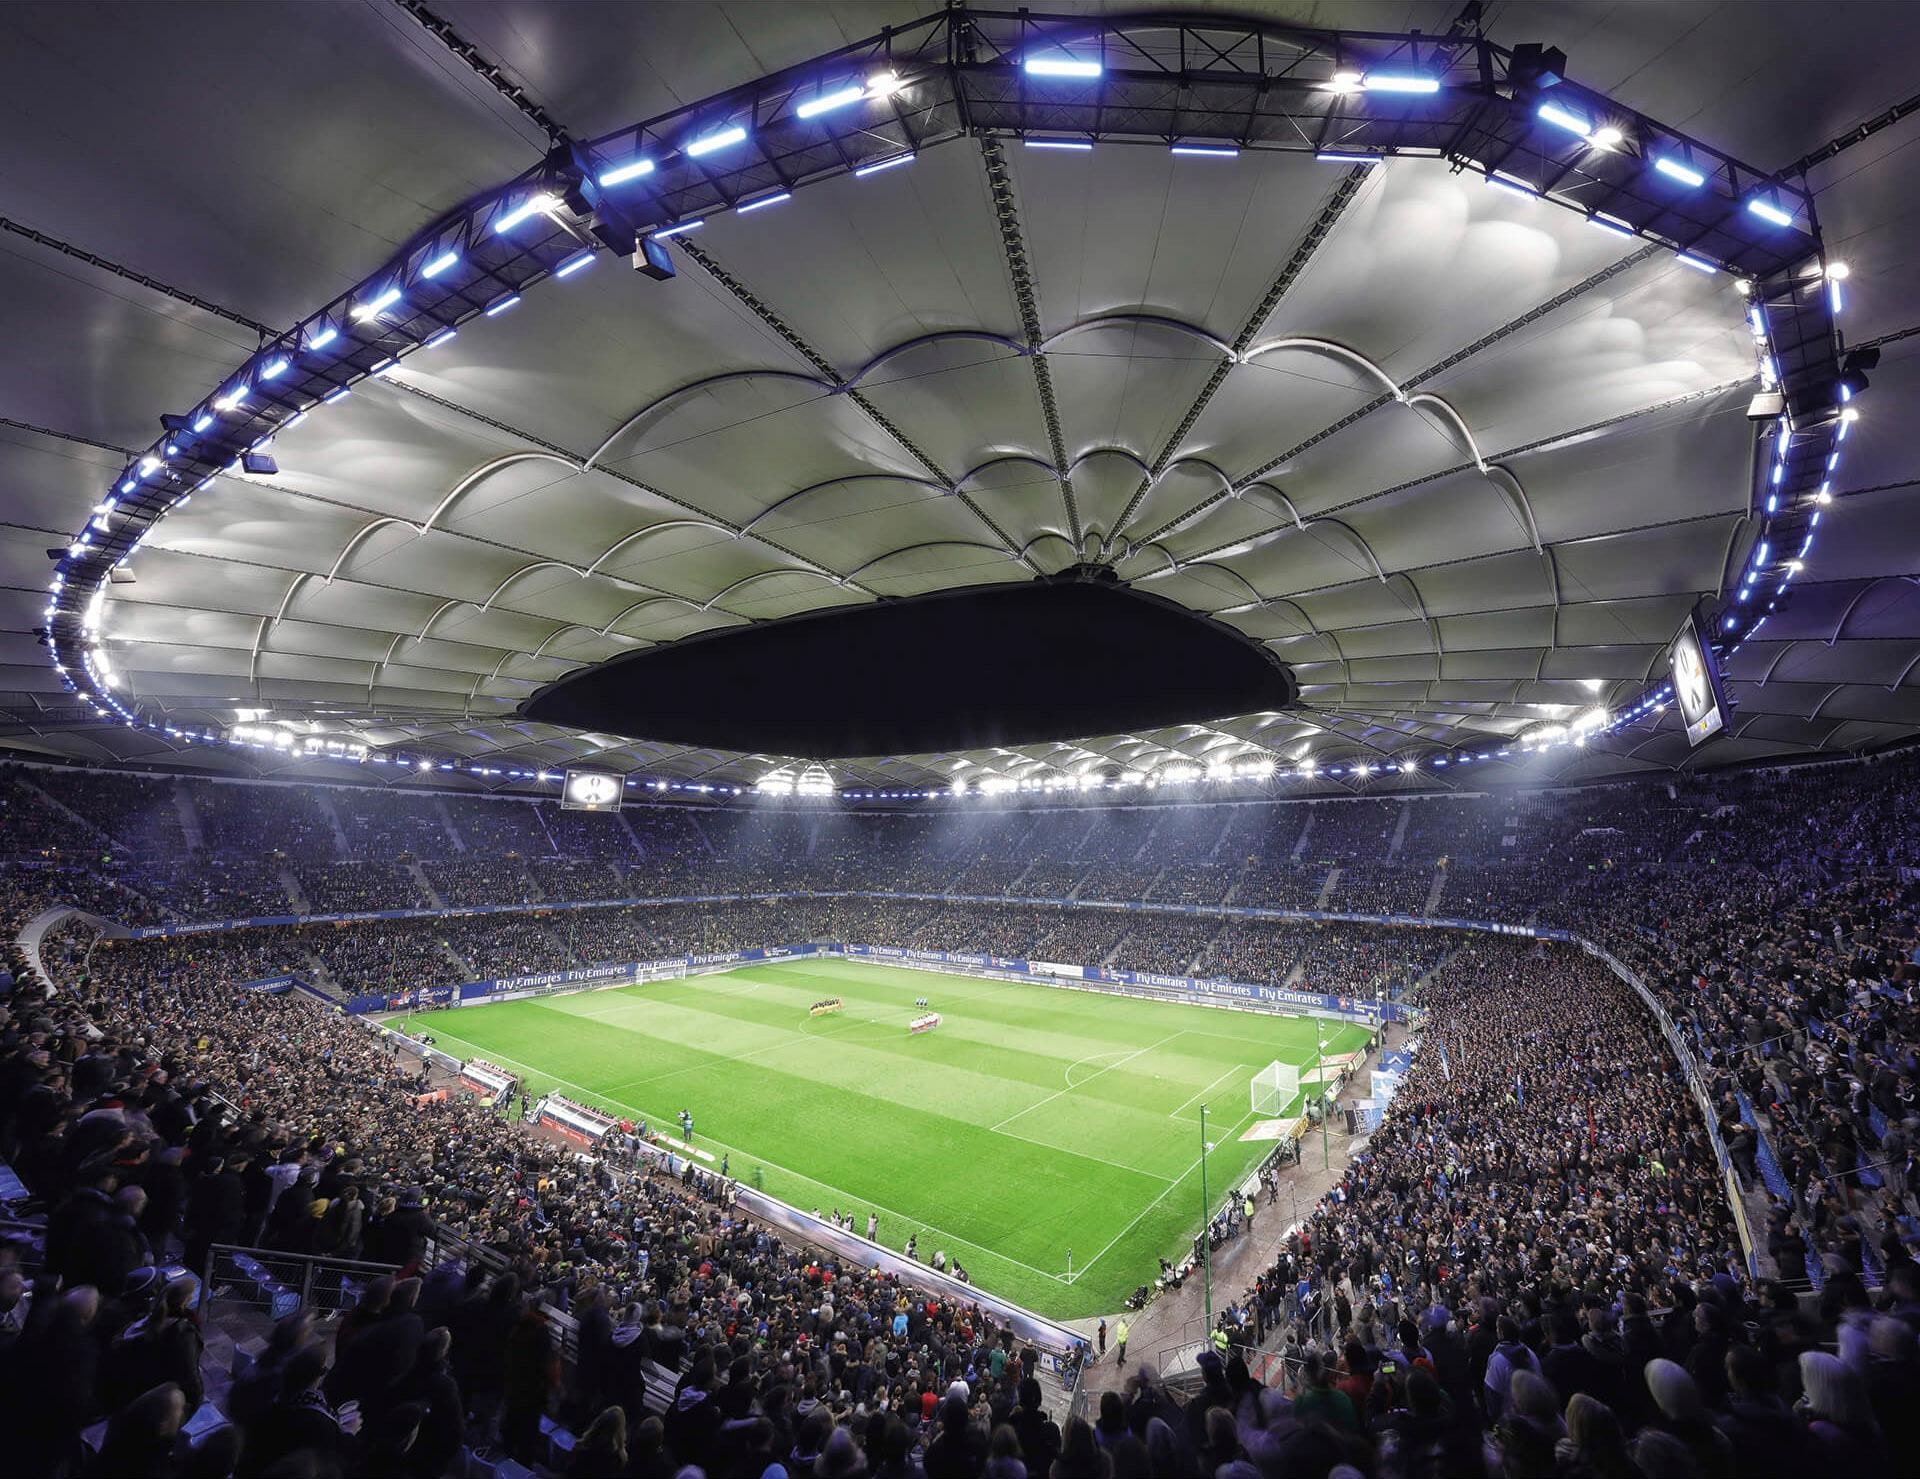 Wall-Art Vliestapete »Hamburger SV im Stadion bei Nacht« bequem kaufen | Wandtattoos